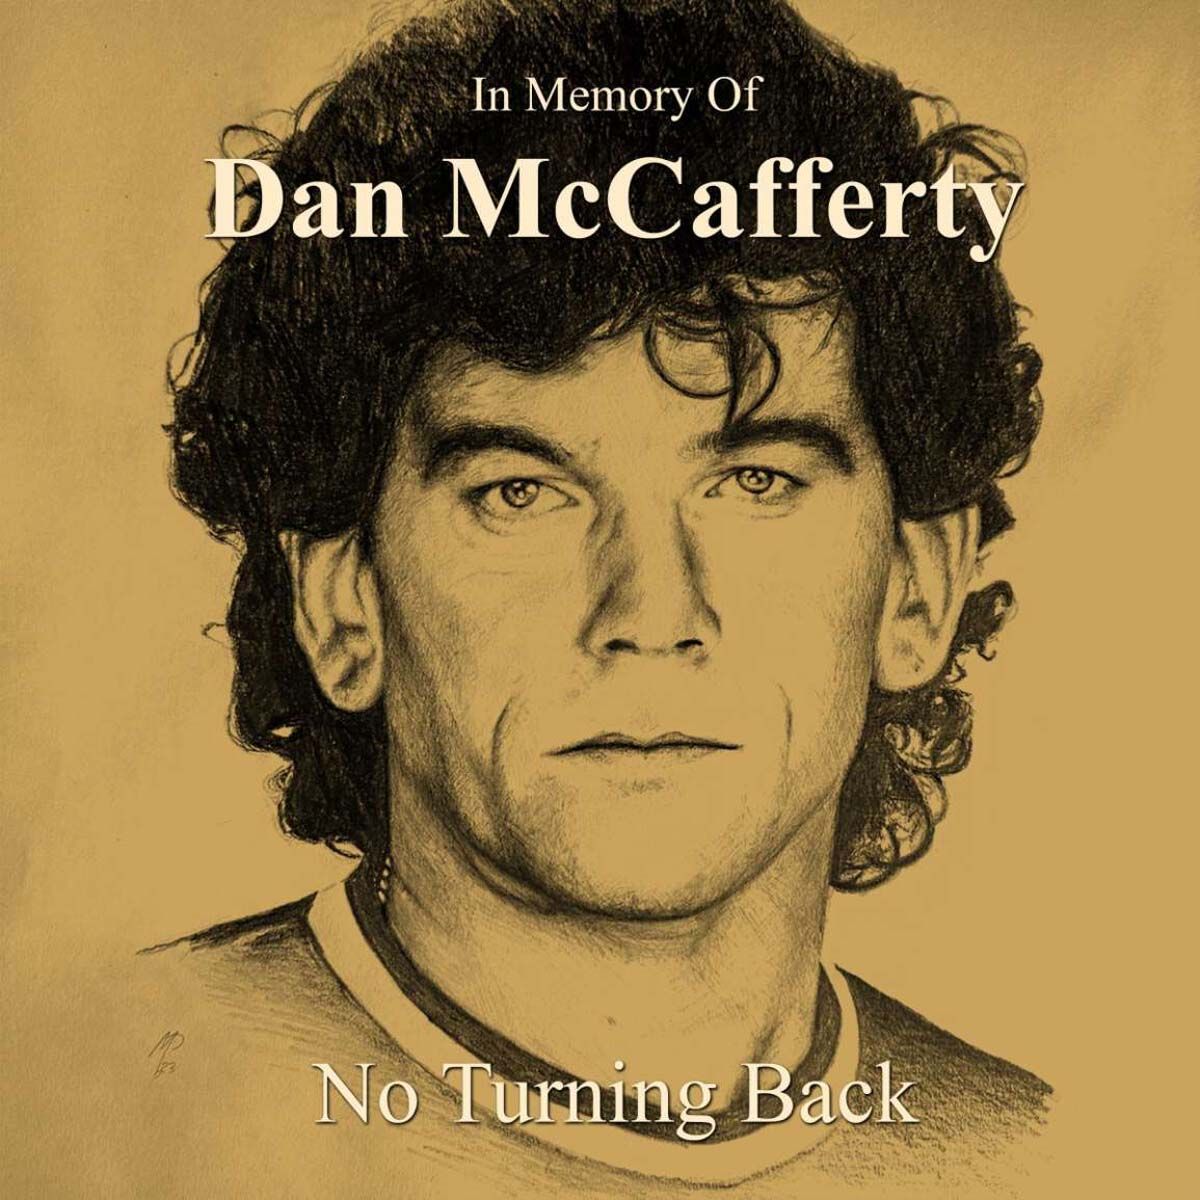 Dan Mccafferty - In Memory Of Dan McCafferty - No Turning Back